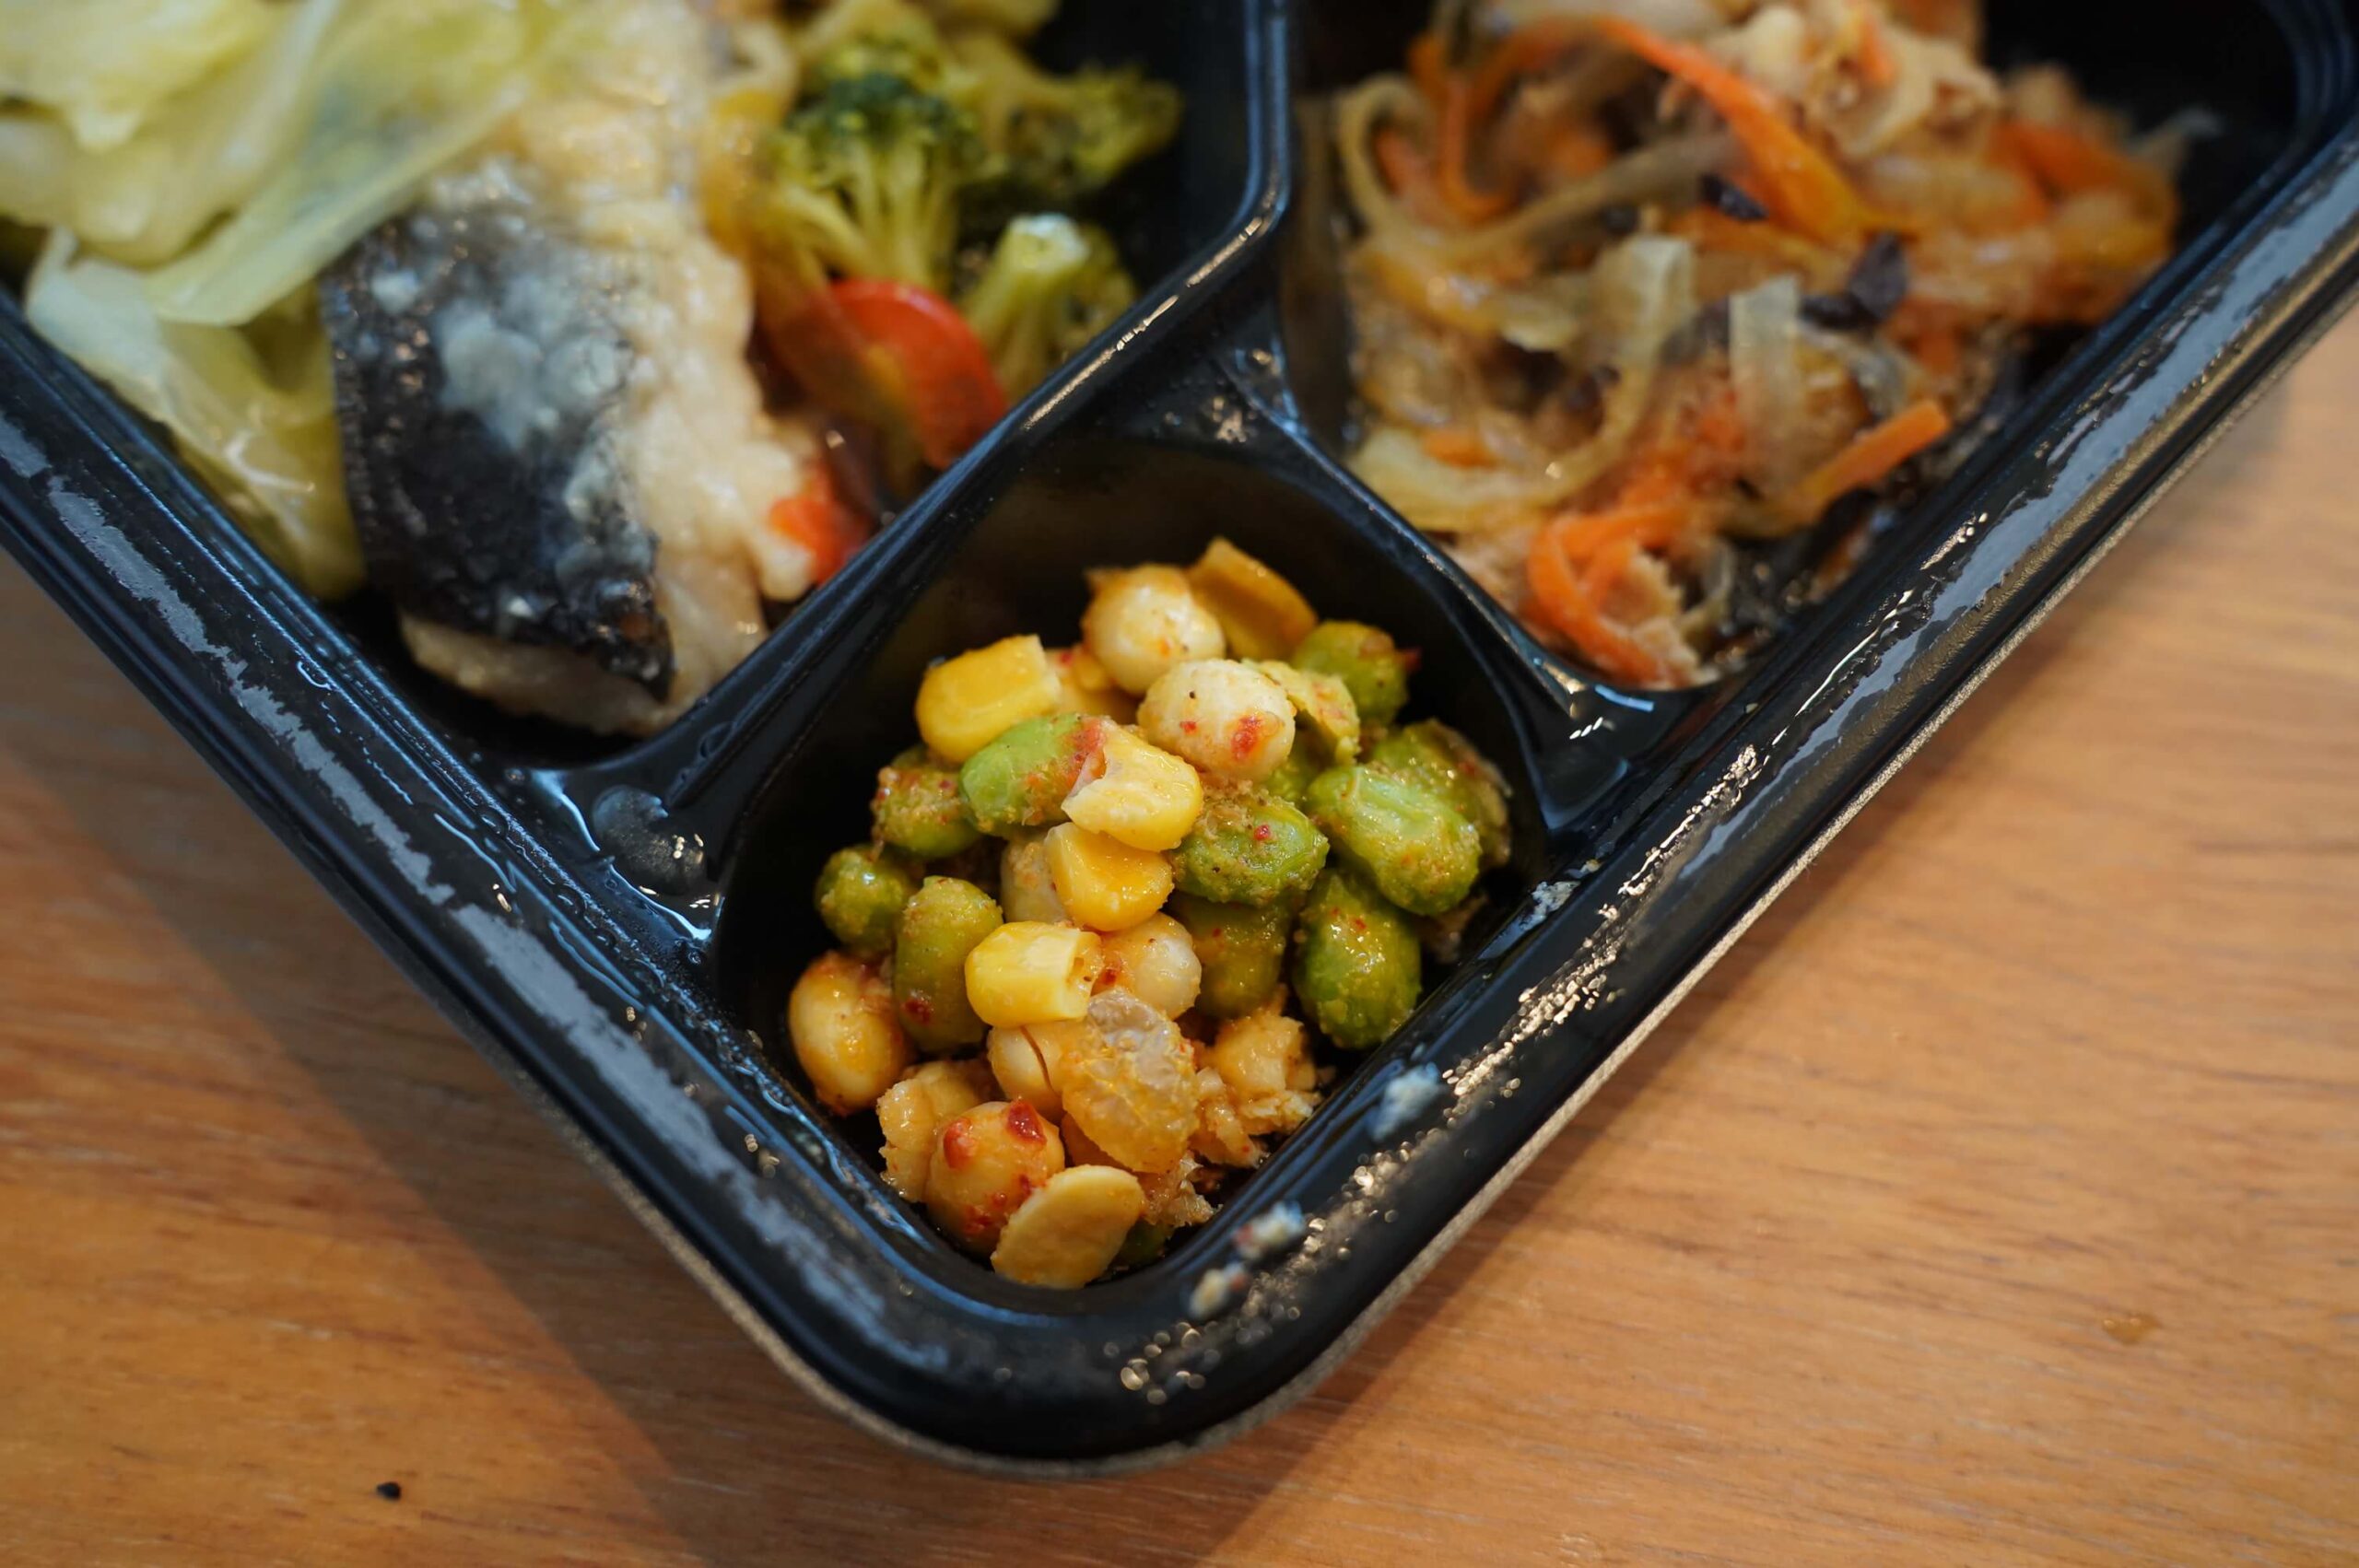 ライザップのサポートミール「白身魚黒酢あんかけ」の「豆のピリ辛サラダ」の写真